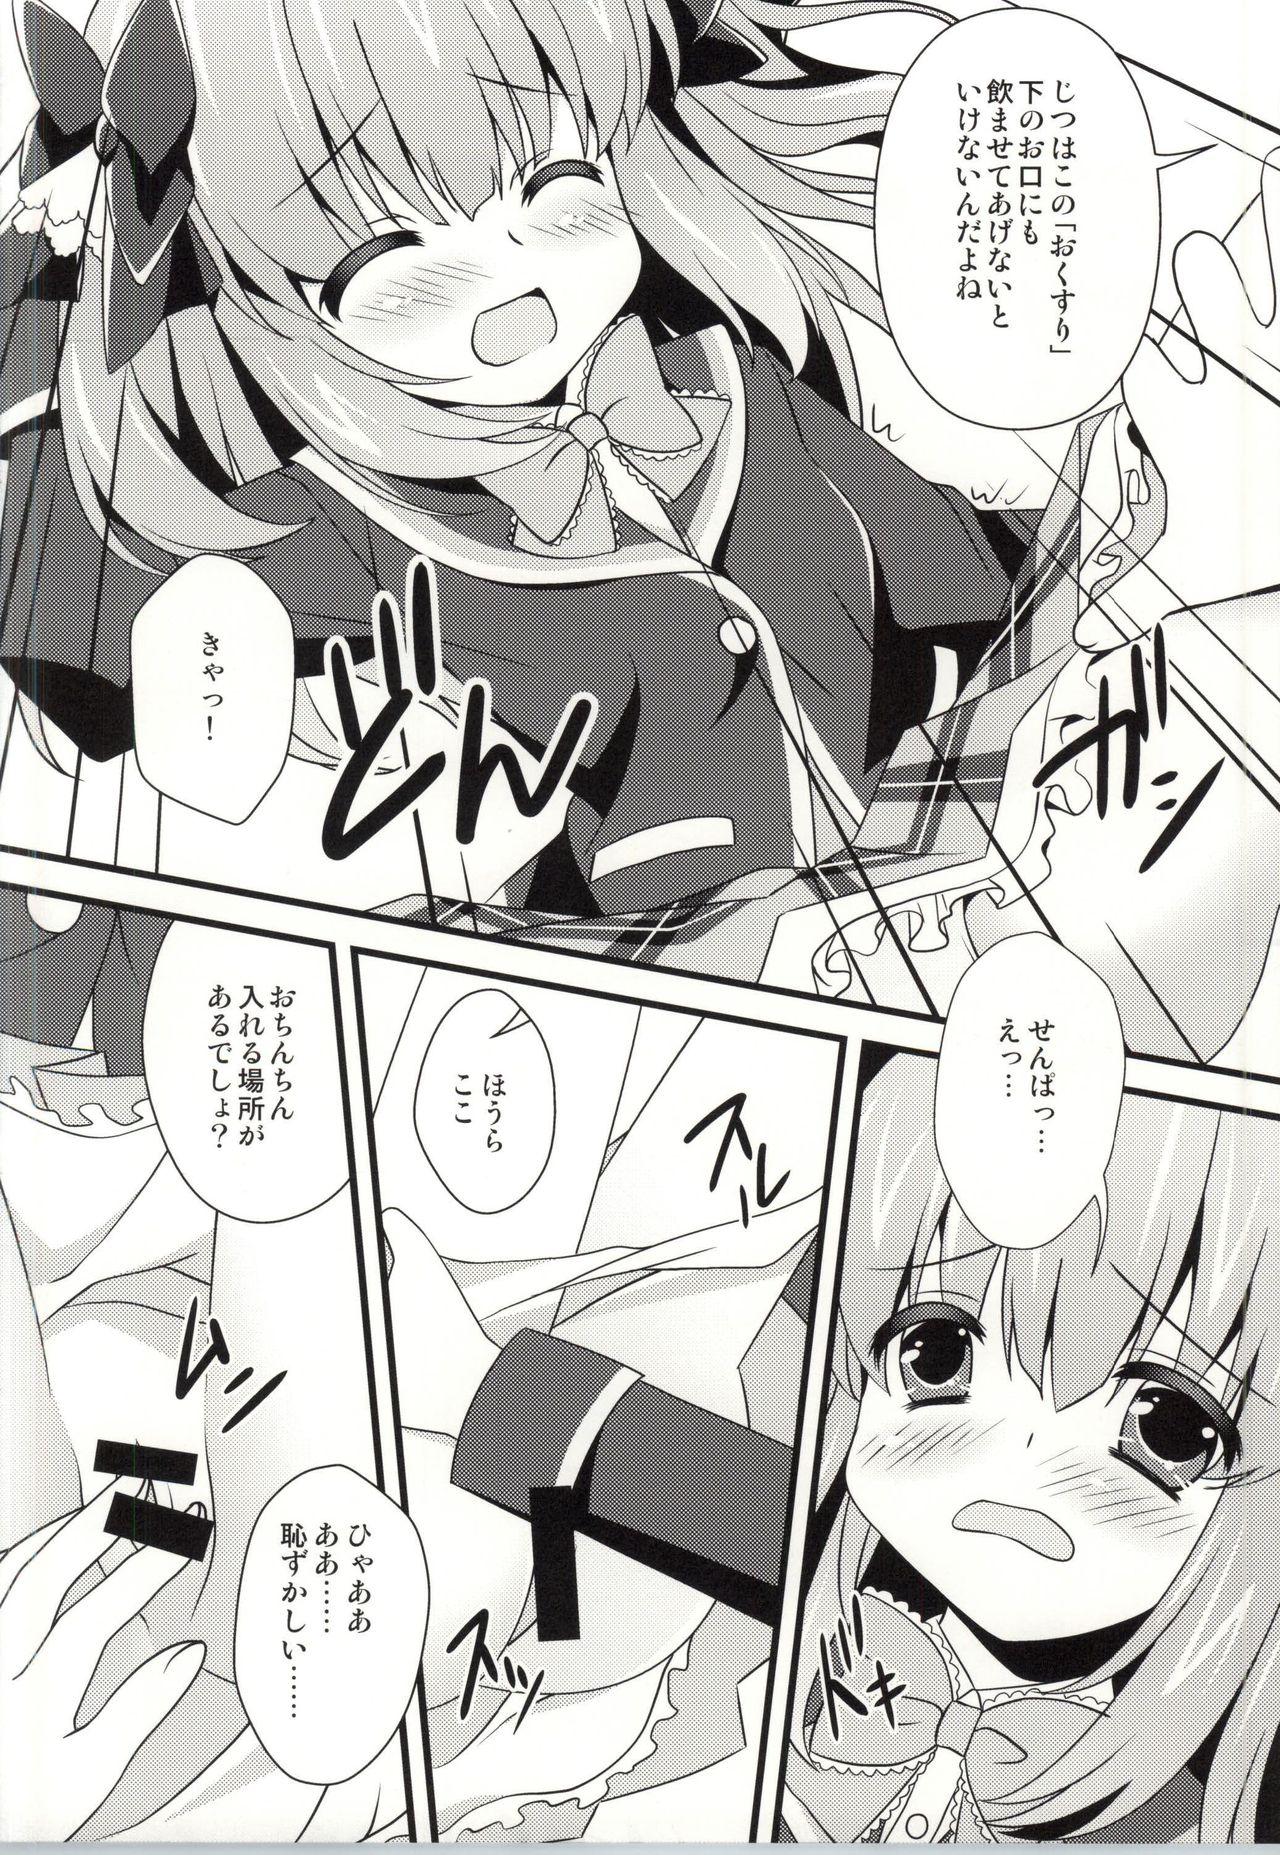 Tinder Nae-chan Okusuri no Jikan da yo - Girl friend beta Para - Page 7